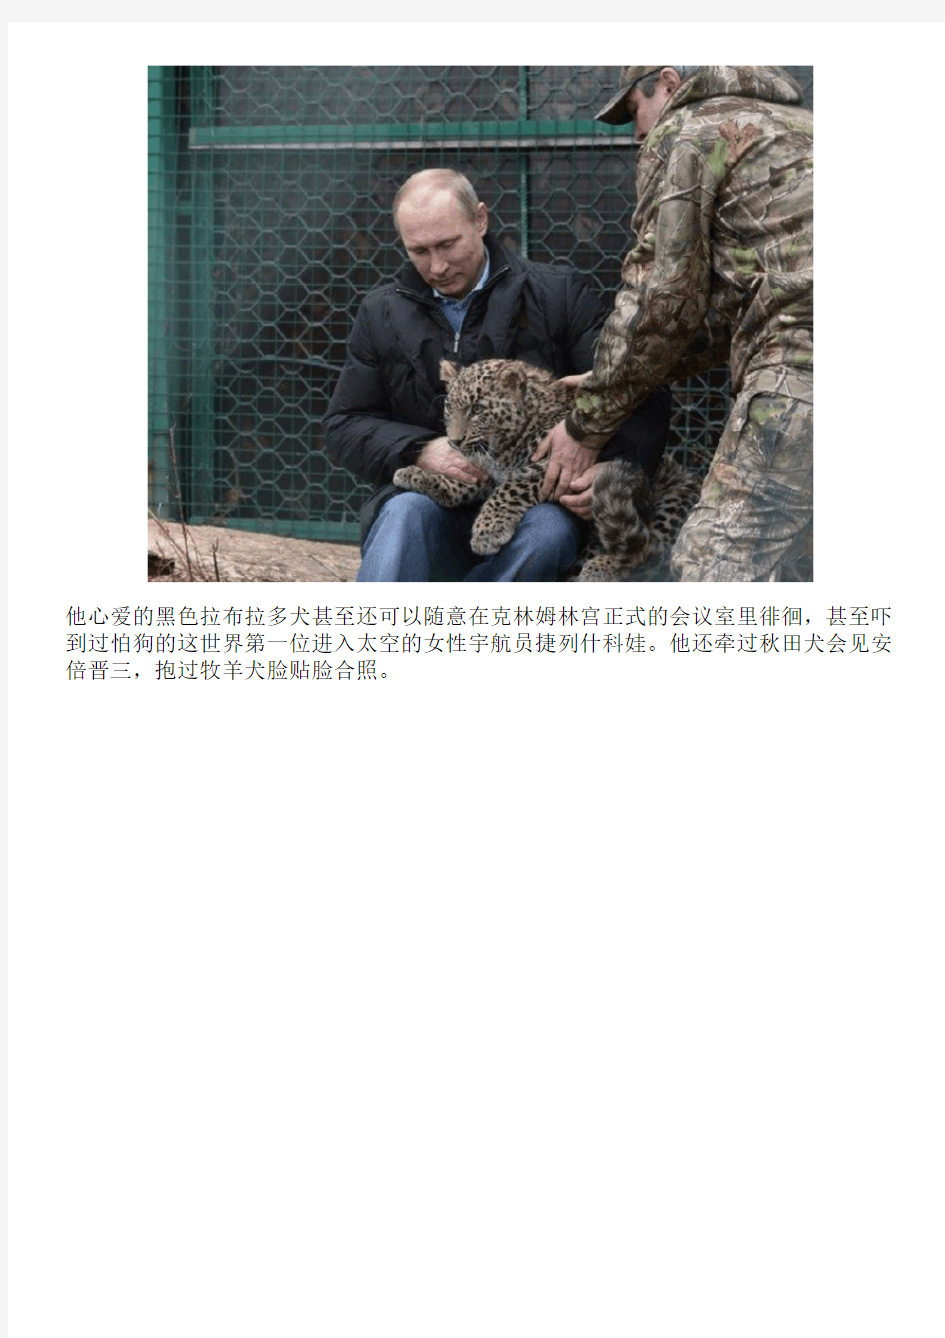 「这世界」奥巴马爱狗,普京就去抱猫,新冷战之宠物比拼